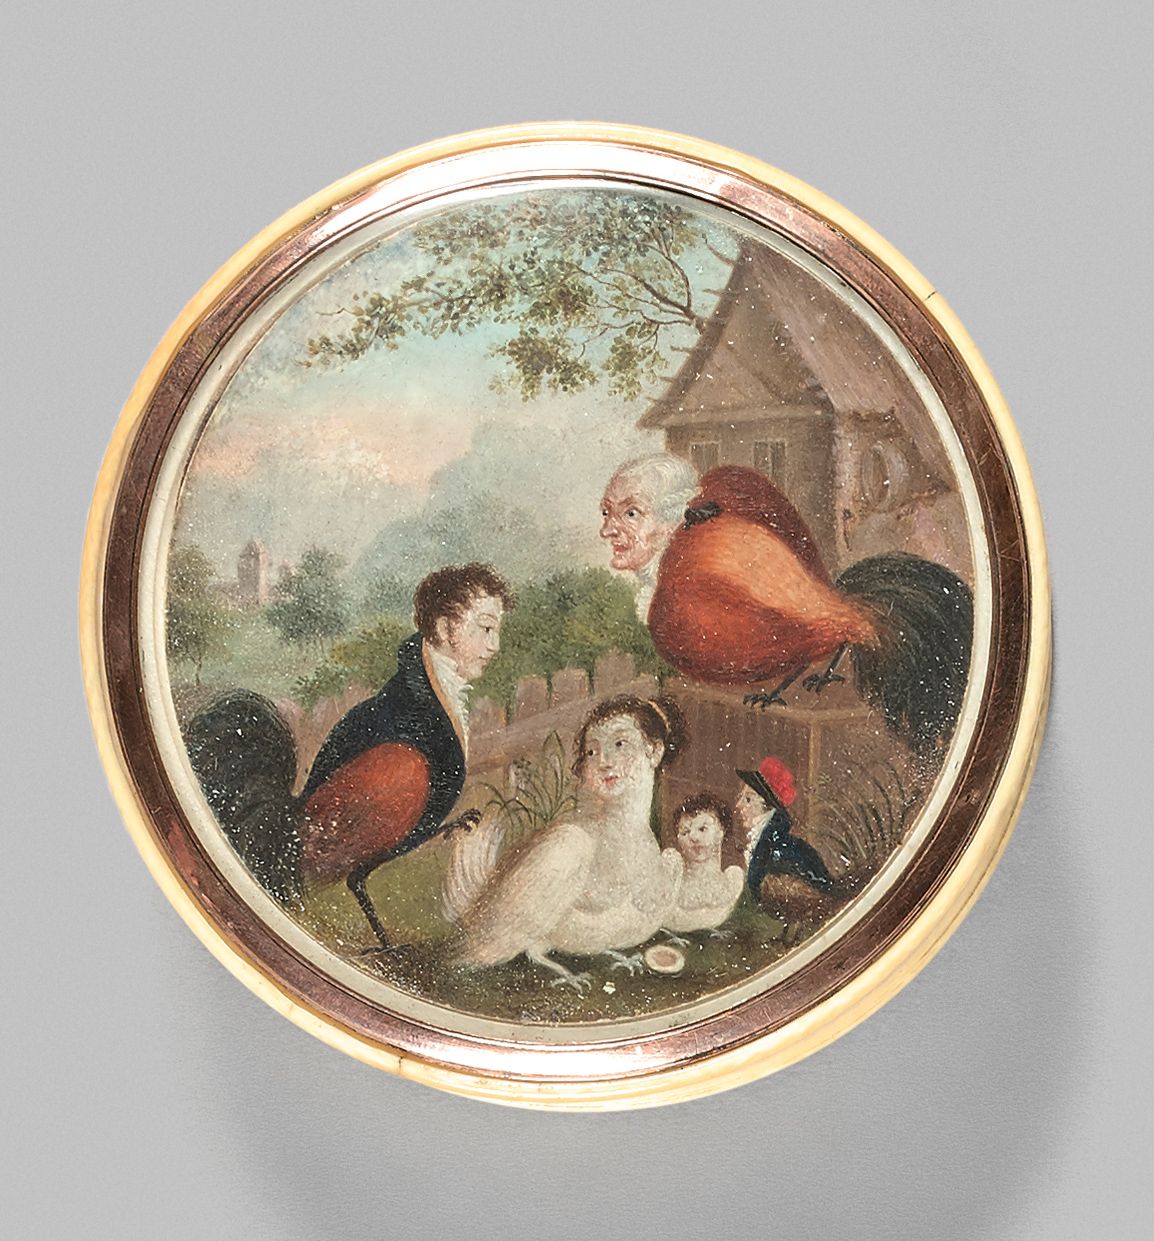 Null 罕见的象牙圆盒，镶嵌着画在象牙上的微型漫画，表现了五个穿着母鸡和公鸡的人物，可能代表了国王路易十六、玛丽-安托瓦内特王后、阿克塞尔-德-费森、路易十七&hellip;